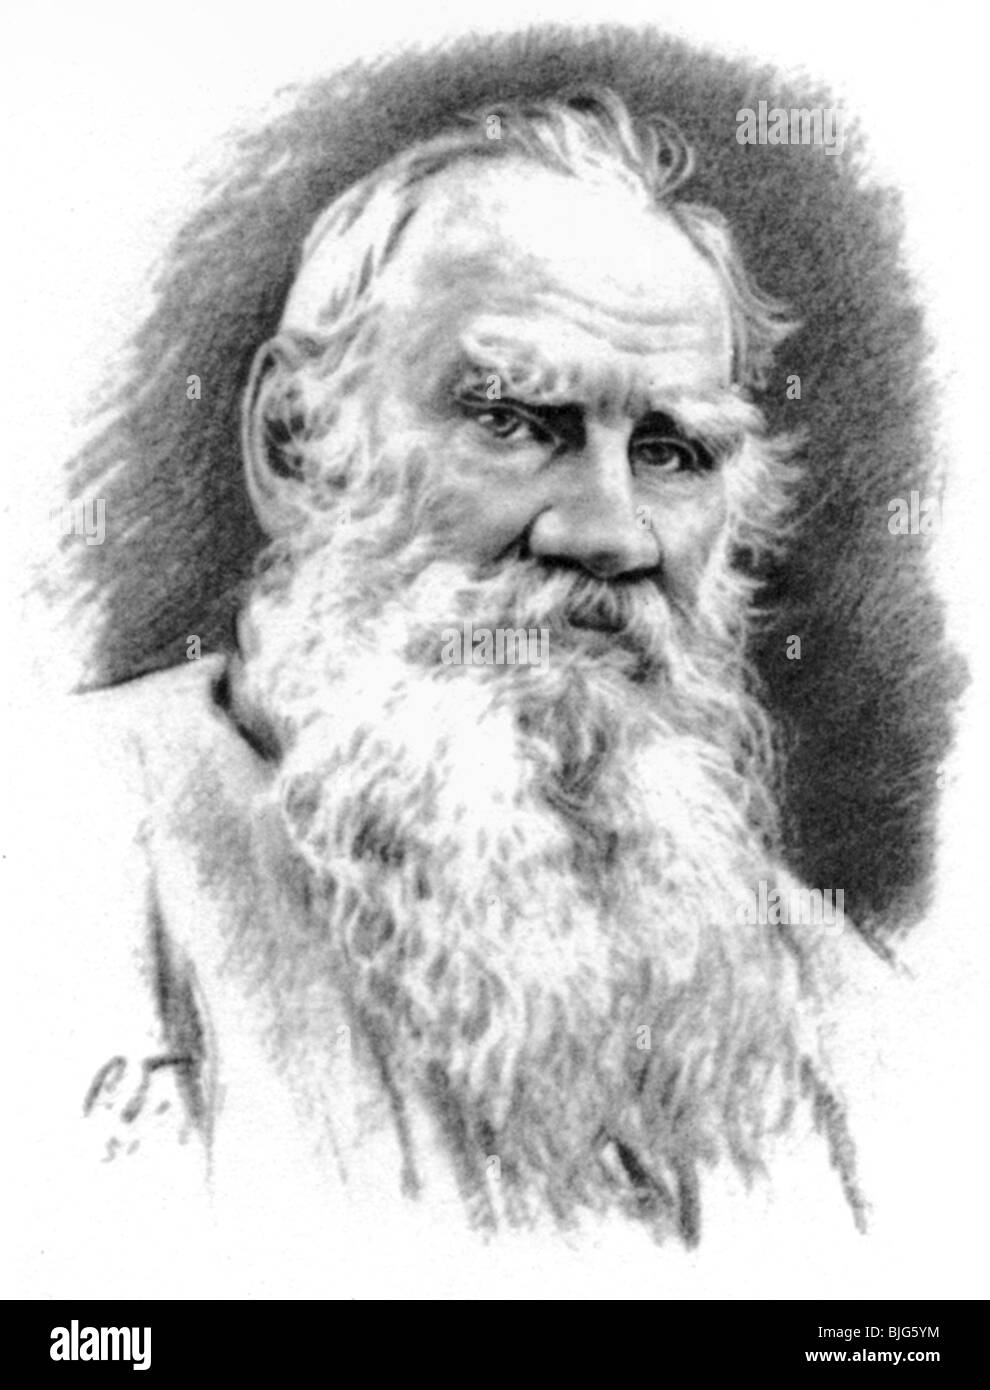 Портрет Льва Толстого в гравюре